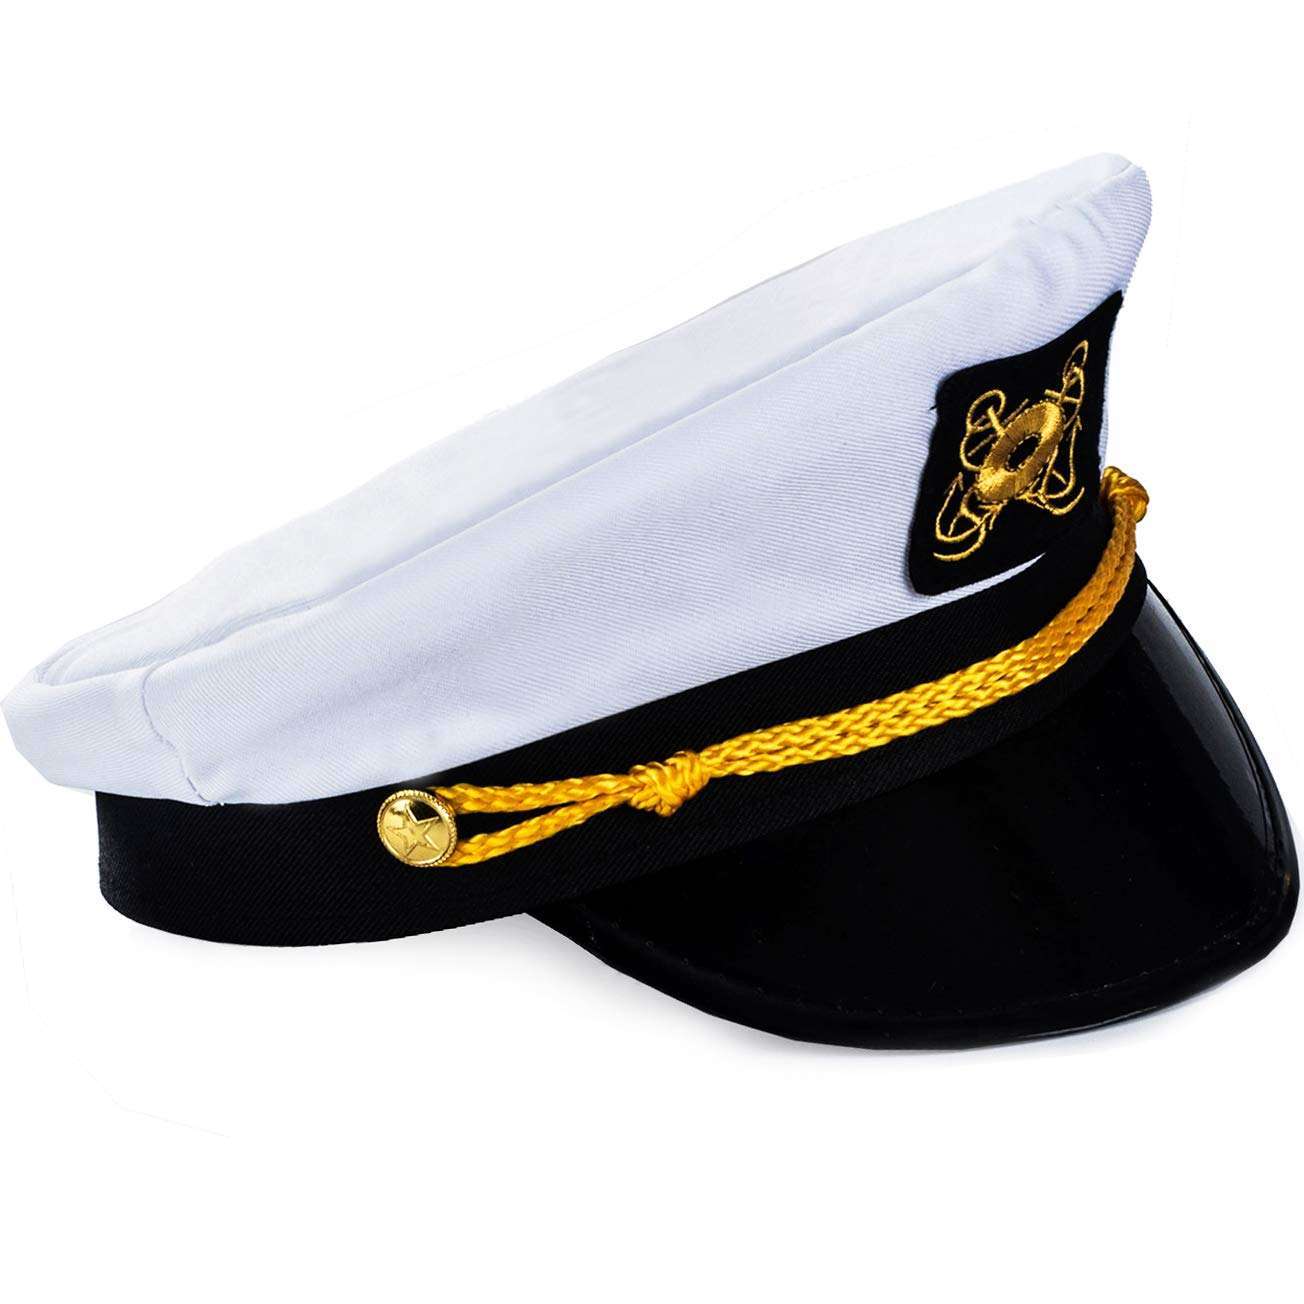 White yacht Captain Cap